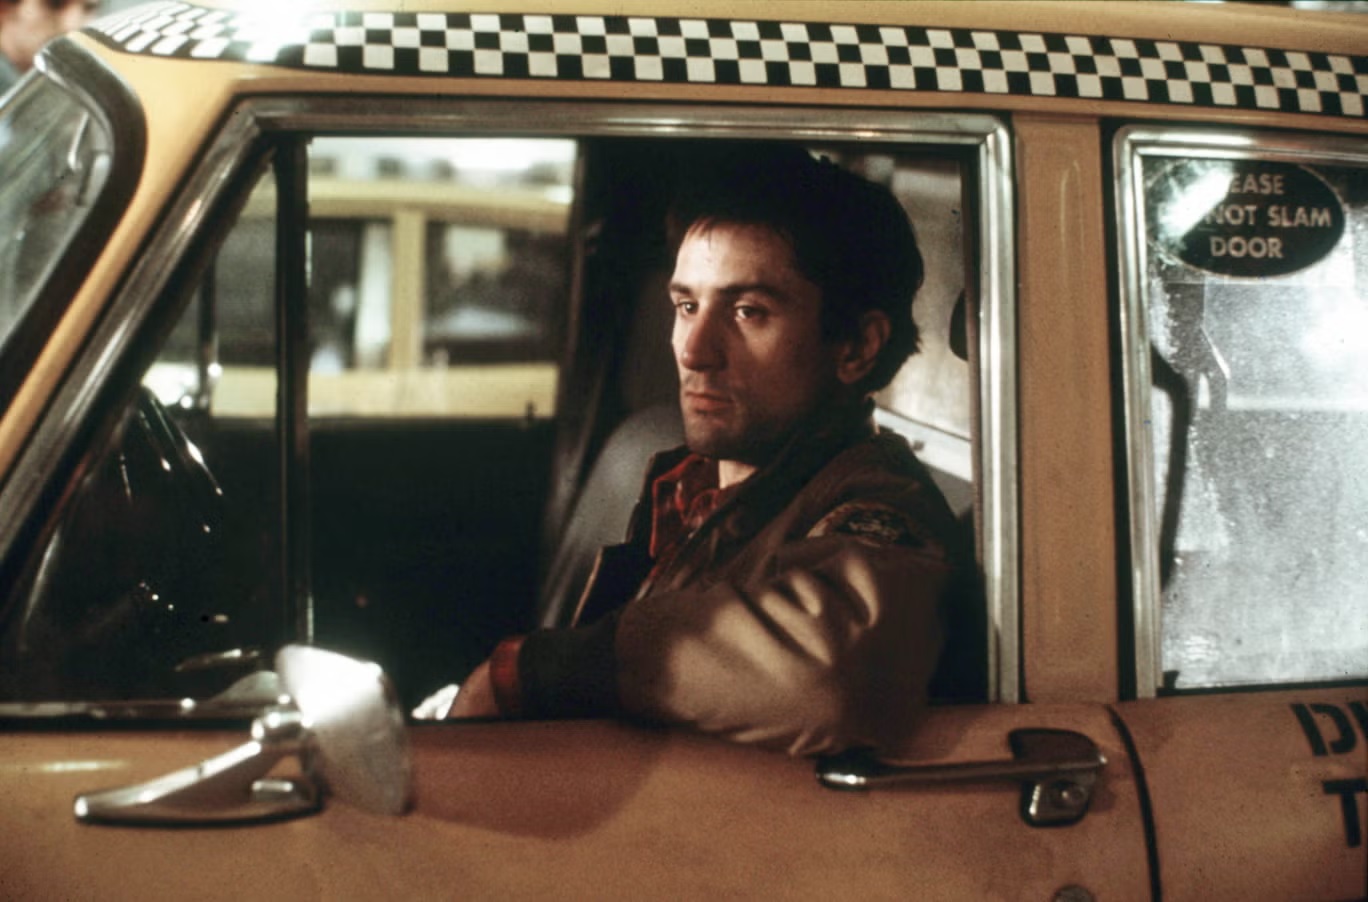 روبرت دي نيرو في فيلم المخرج سكورسيزي الشهير "سائق التاكسي" عام 1976 (كولومبيا/كوبال/شترستوك)